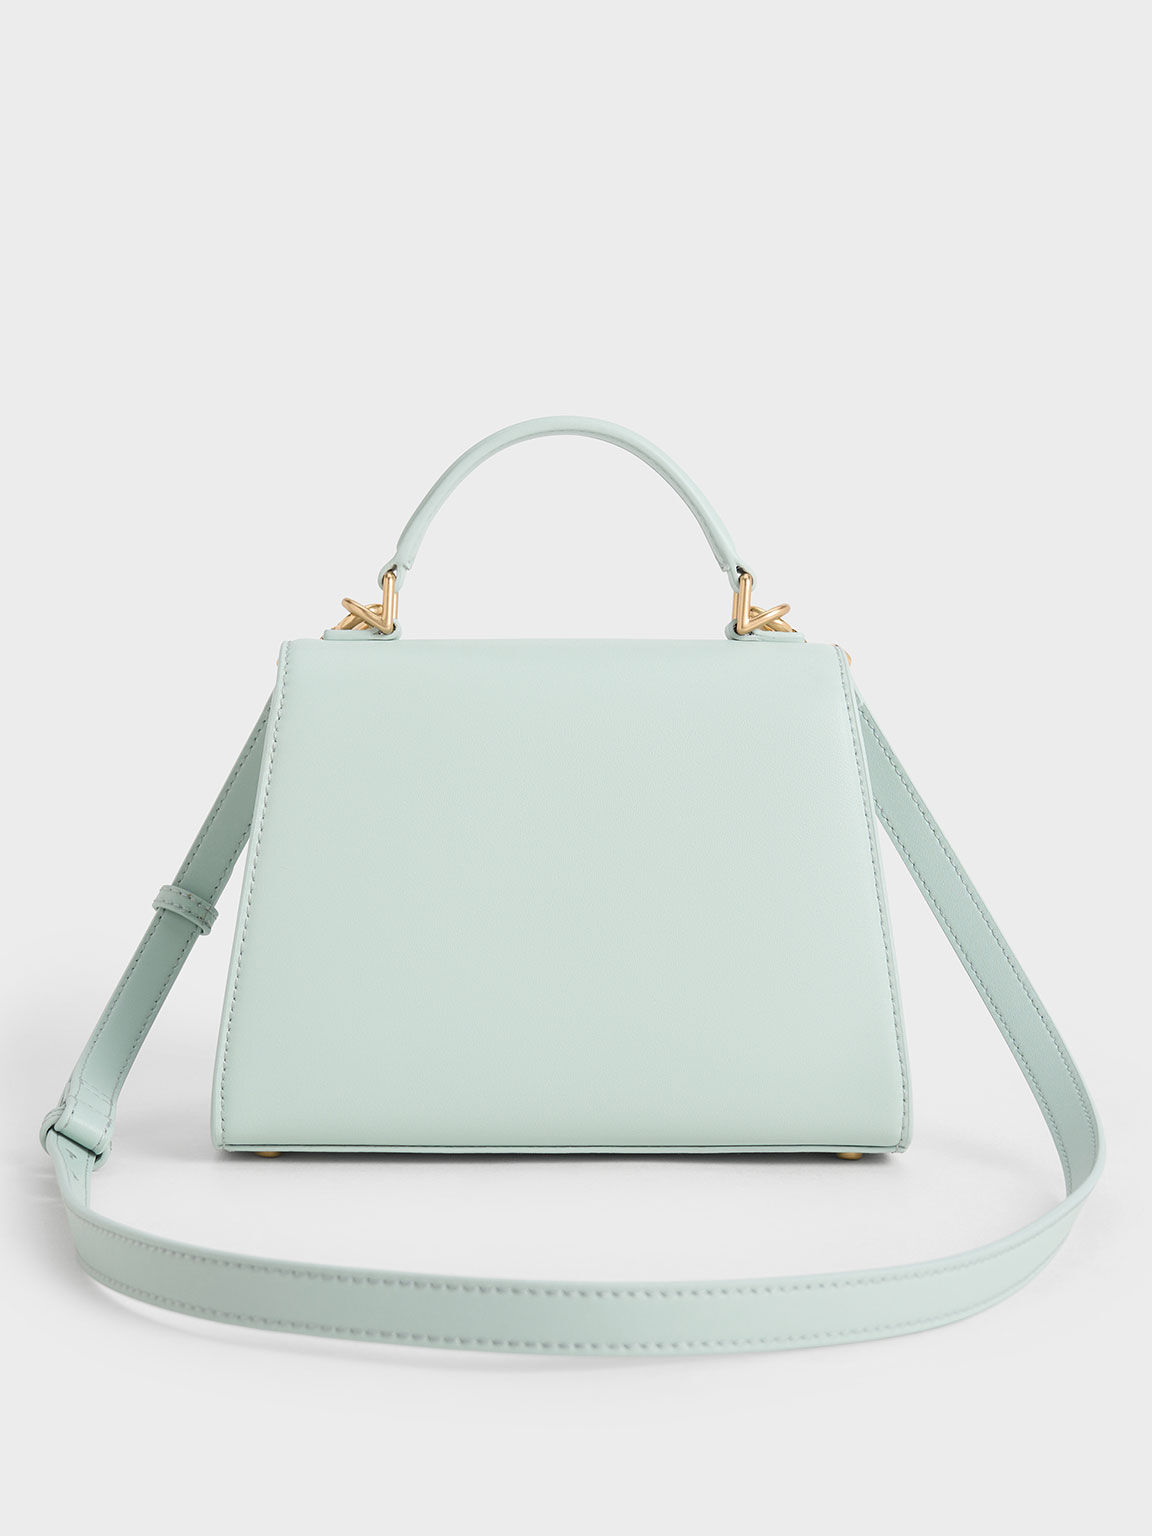 Violetta Trapeze Top Handle Bag, Sage Green, hi-res